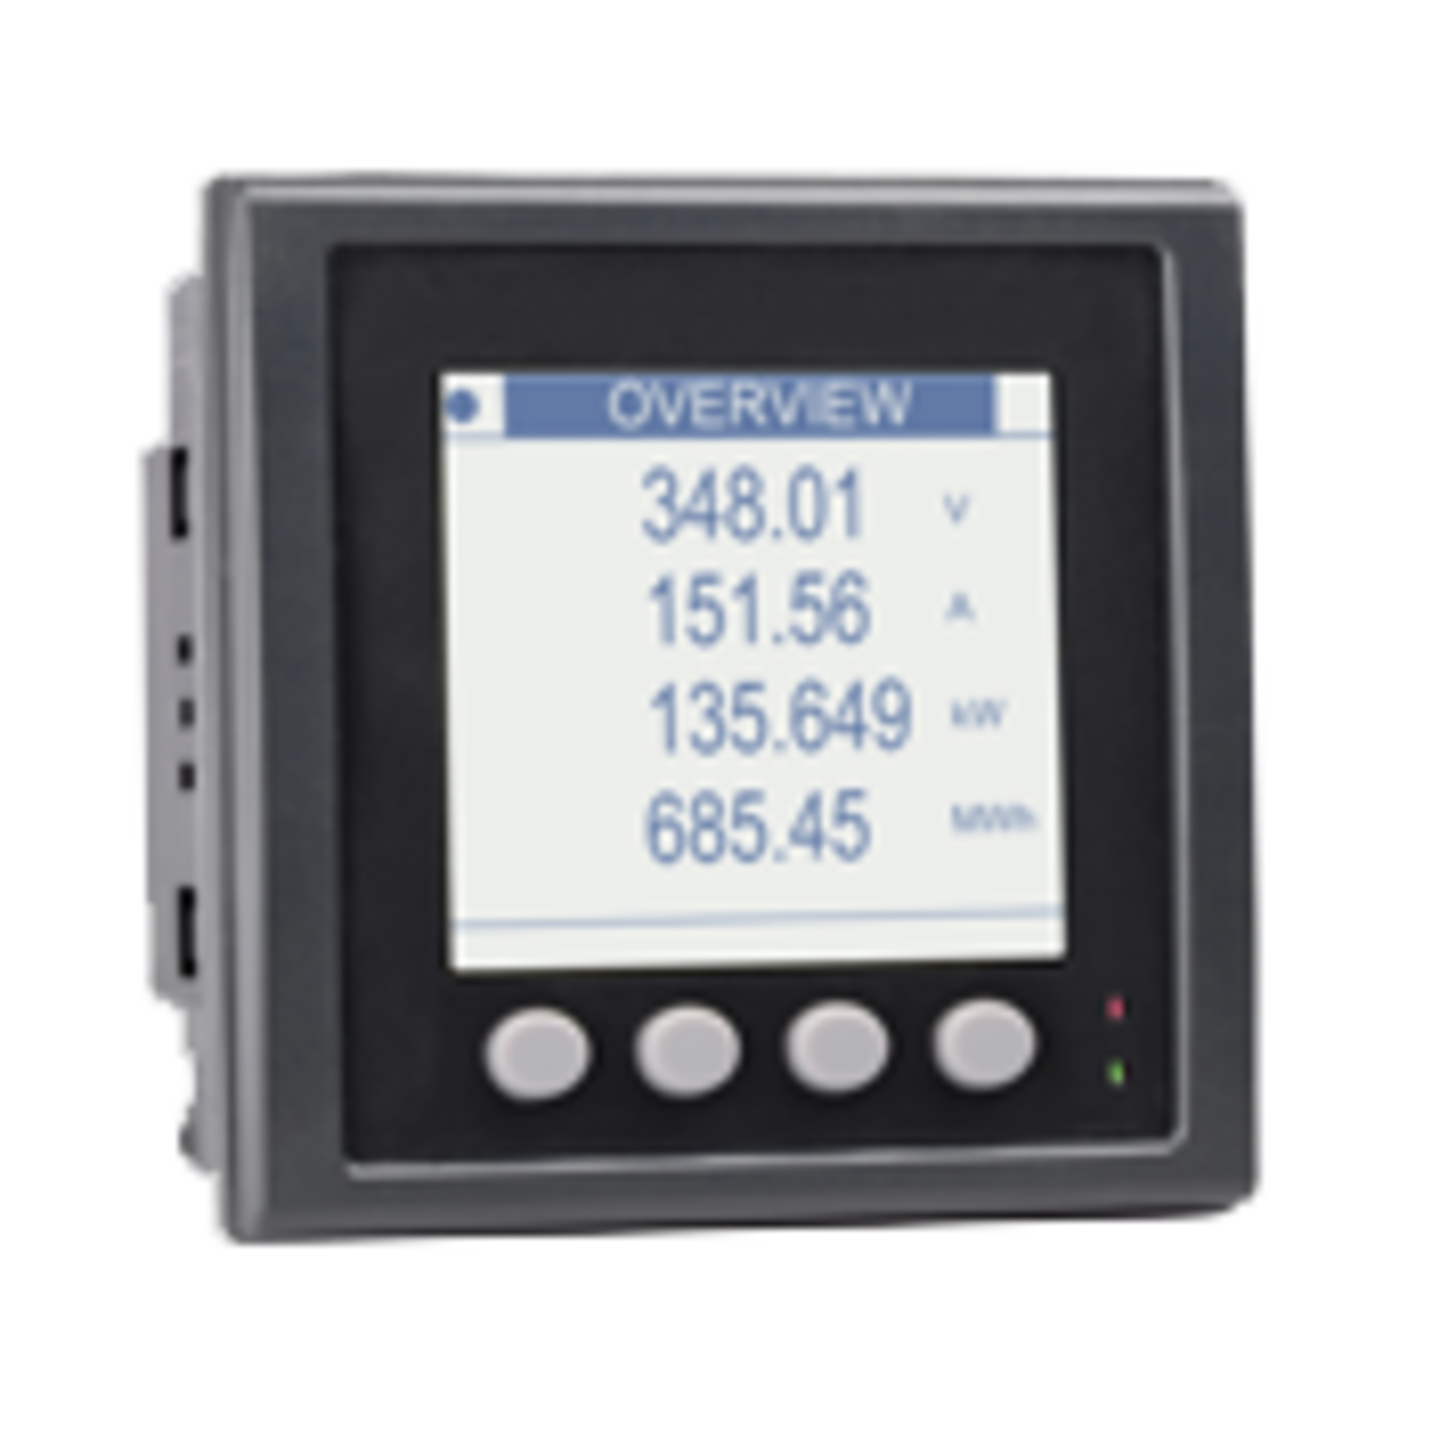 CS PM 5110 current effective power meter